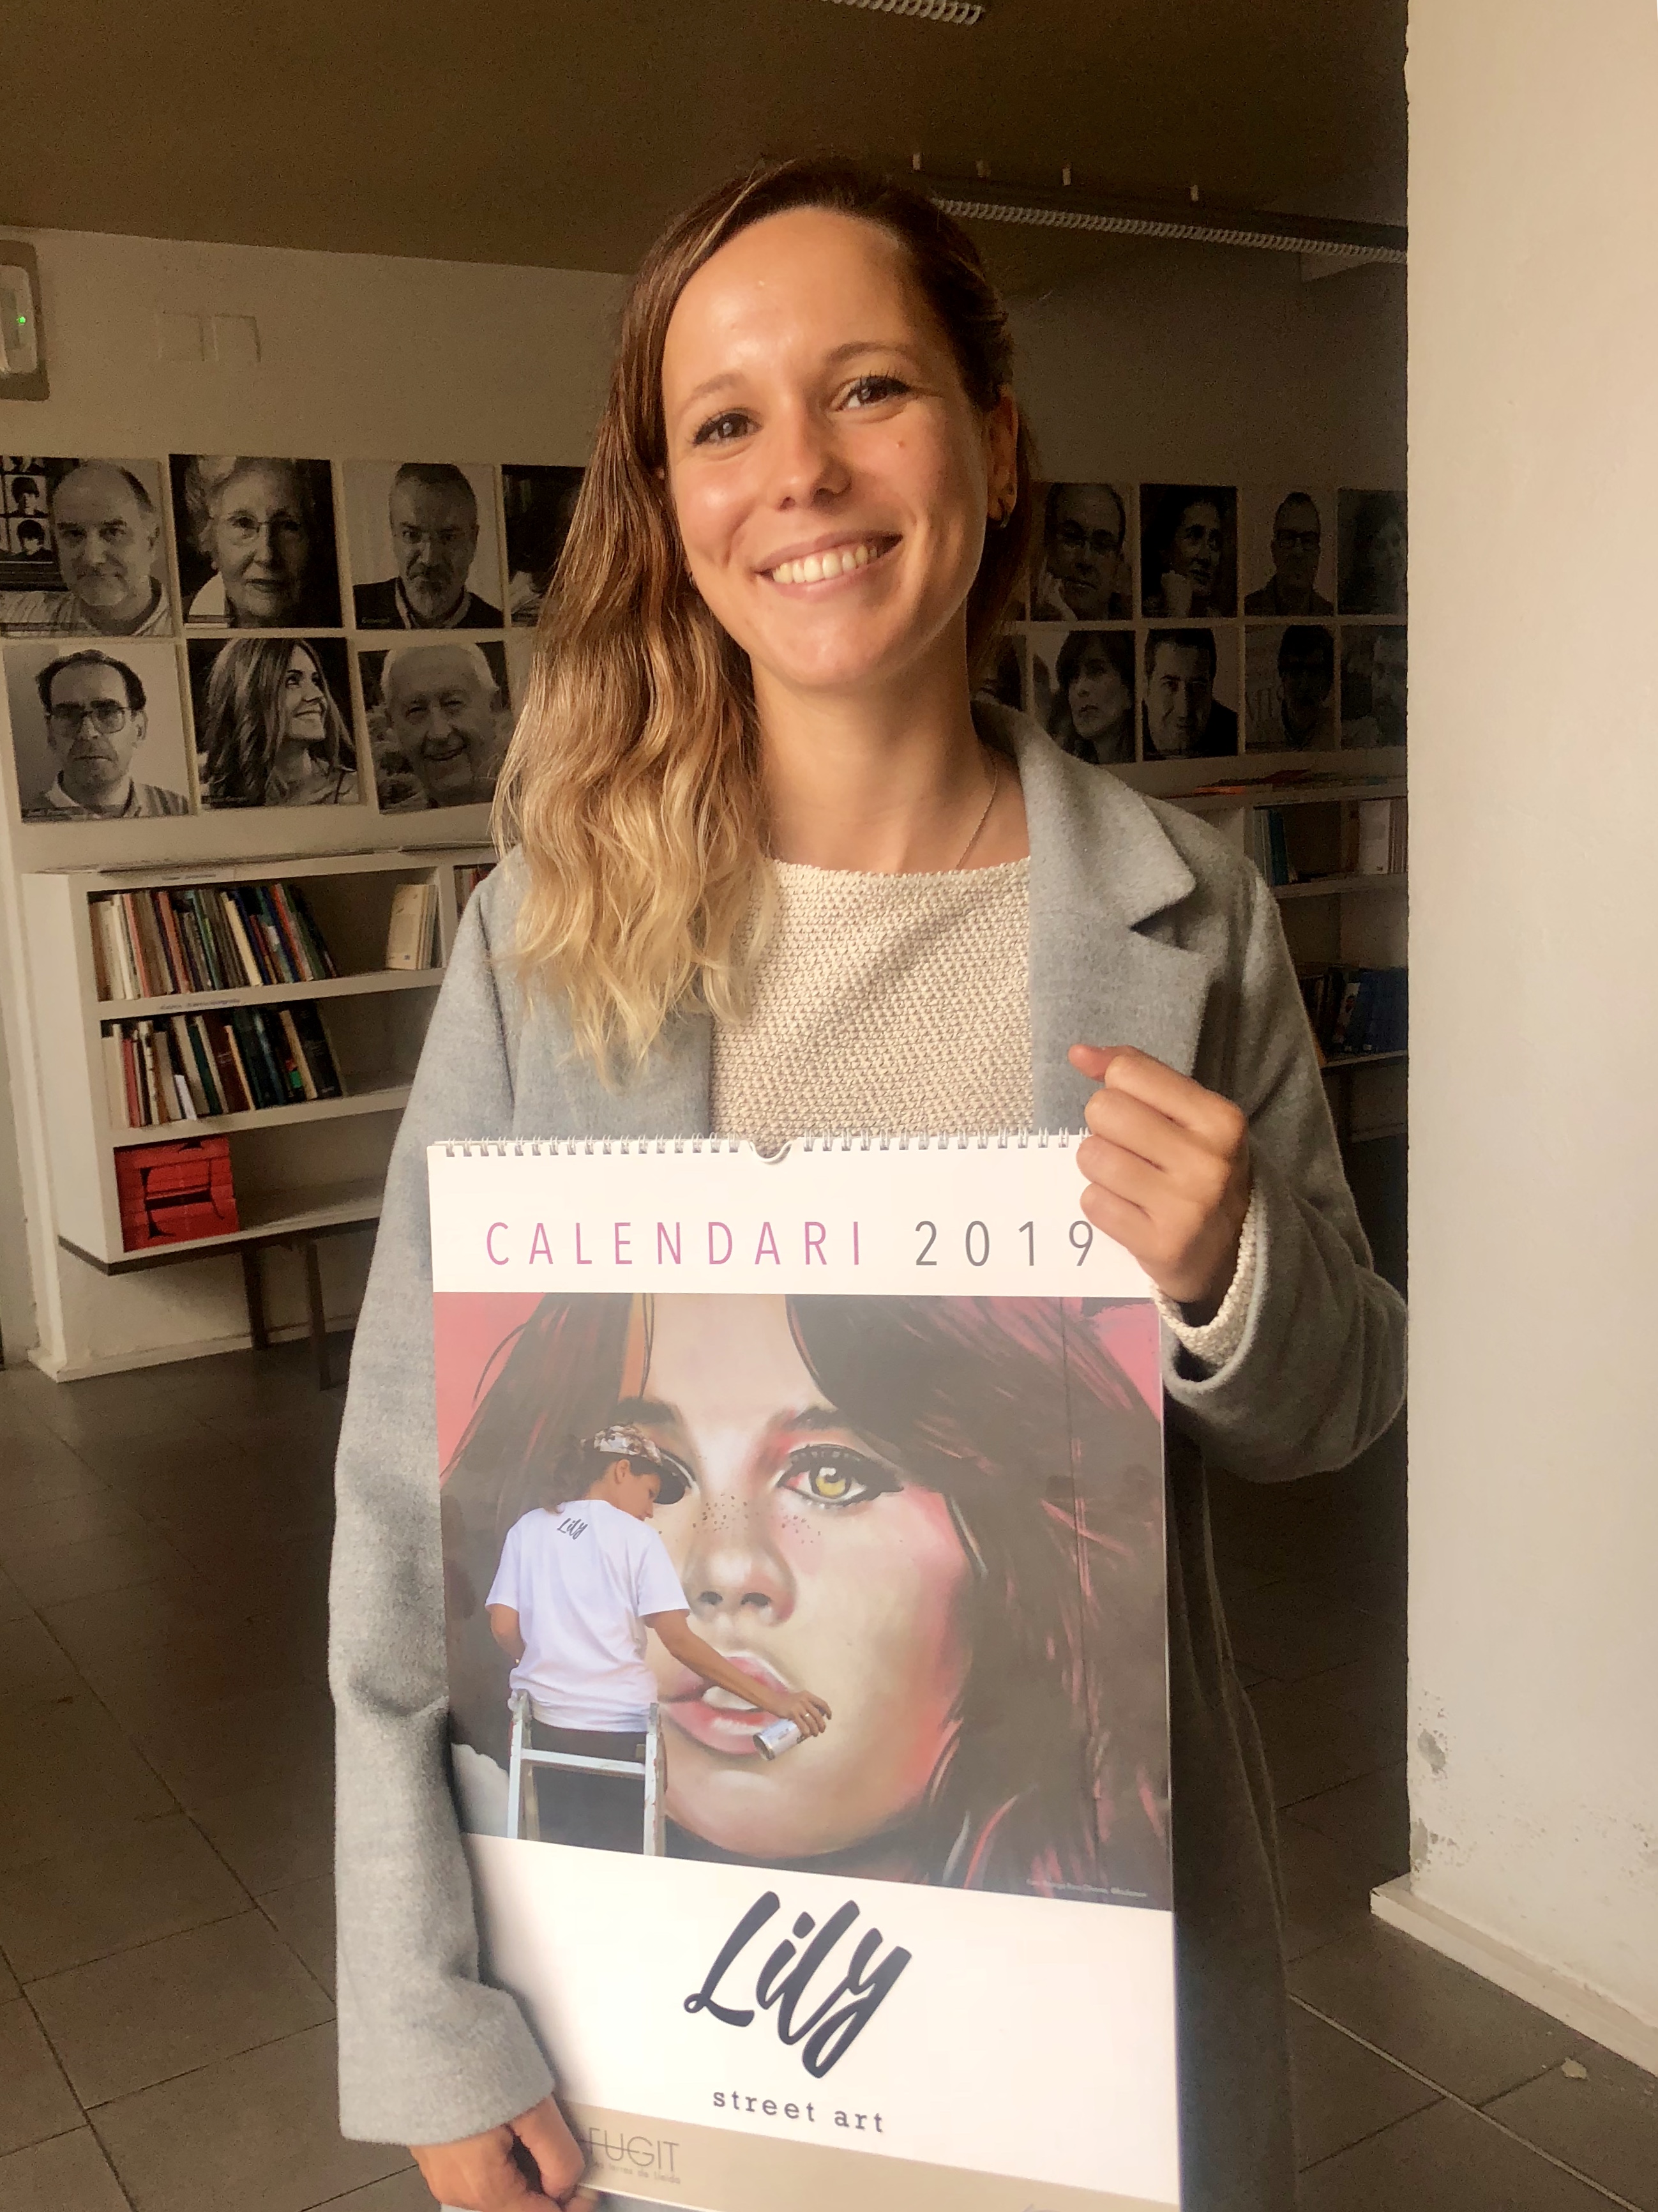 L’artista lleidatana Lily Brik és la protagonista del calendari de 2019 de Pagès Editors